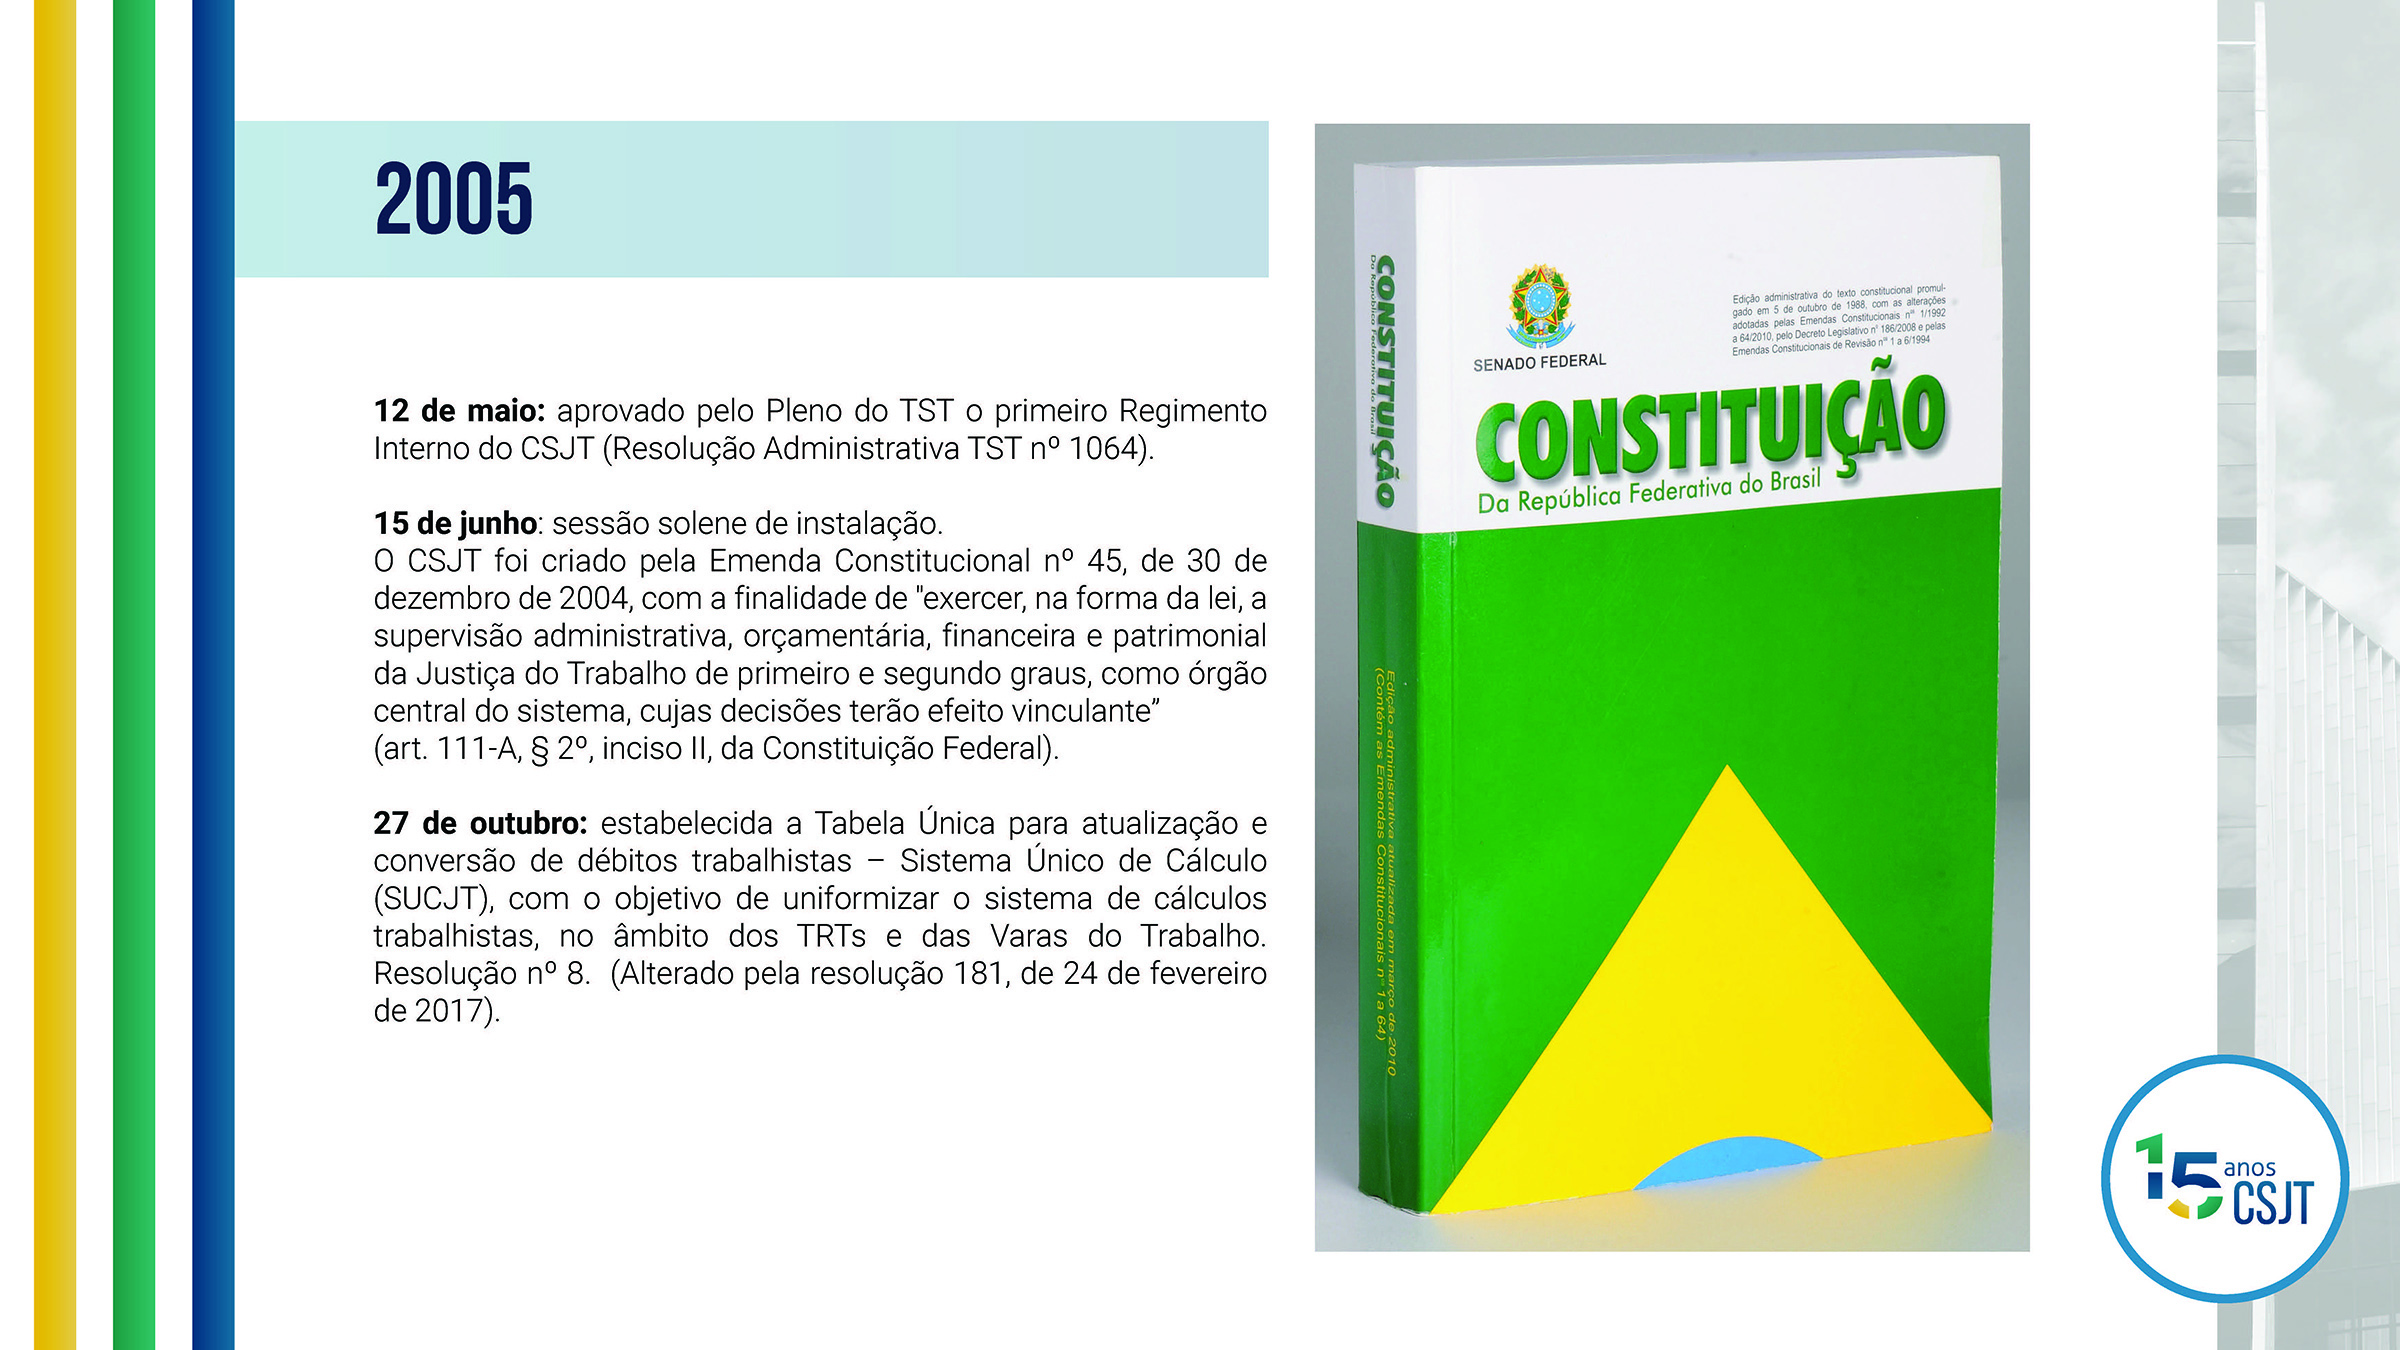 Imagem com uma foto da Constituição Brasileira de 1988, co m o seguinte texto ao lado: Acontecimentos importantes para o CSJT no ano de 2005, 12 de maio: aprovado pelo Pleno do TST o primeiro Regimento Interno do CSJT (Resolução Administrativa TST nº 1064). 15 de junho: sessão solene de instalação. O CSJT foi criado pela Emenda Constitucional nº 45, de 30 de dezembro de 2004, com a finalidade de 'exercer, na forma da lei, a supervisão administrativa, orçamentária, financeira e patrimonial da Justiça do Trabalho de primeiro e segundo graus, como órgão central do sistema, cujas decisões terão efeito vinculante' (art. 111-A, § 2º, inciso II, da Constituição Federal). 27 de outubro: estabelecida a Tabela Única para atualização e conversão de débitos trabalhistas – Sistema Único de Cálculo (SUCJT), com o objetivo de uniformizar o sistema de cálculos trabalhistas, no âmbito dos TRTs e das Varas do Trabalho. Resolução nº 8. (Alterado pela resolução 181, de 24 de fevereiro de 2017).